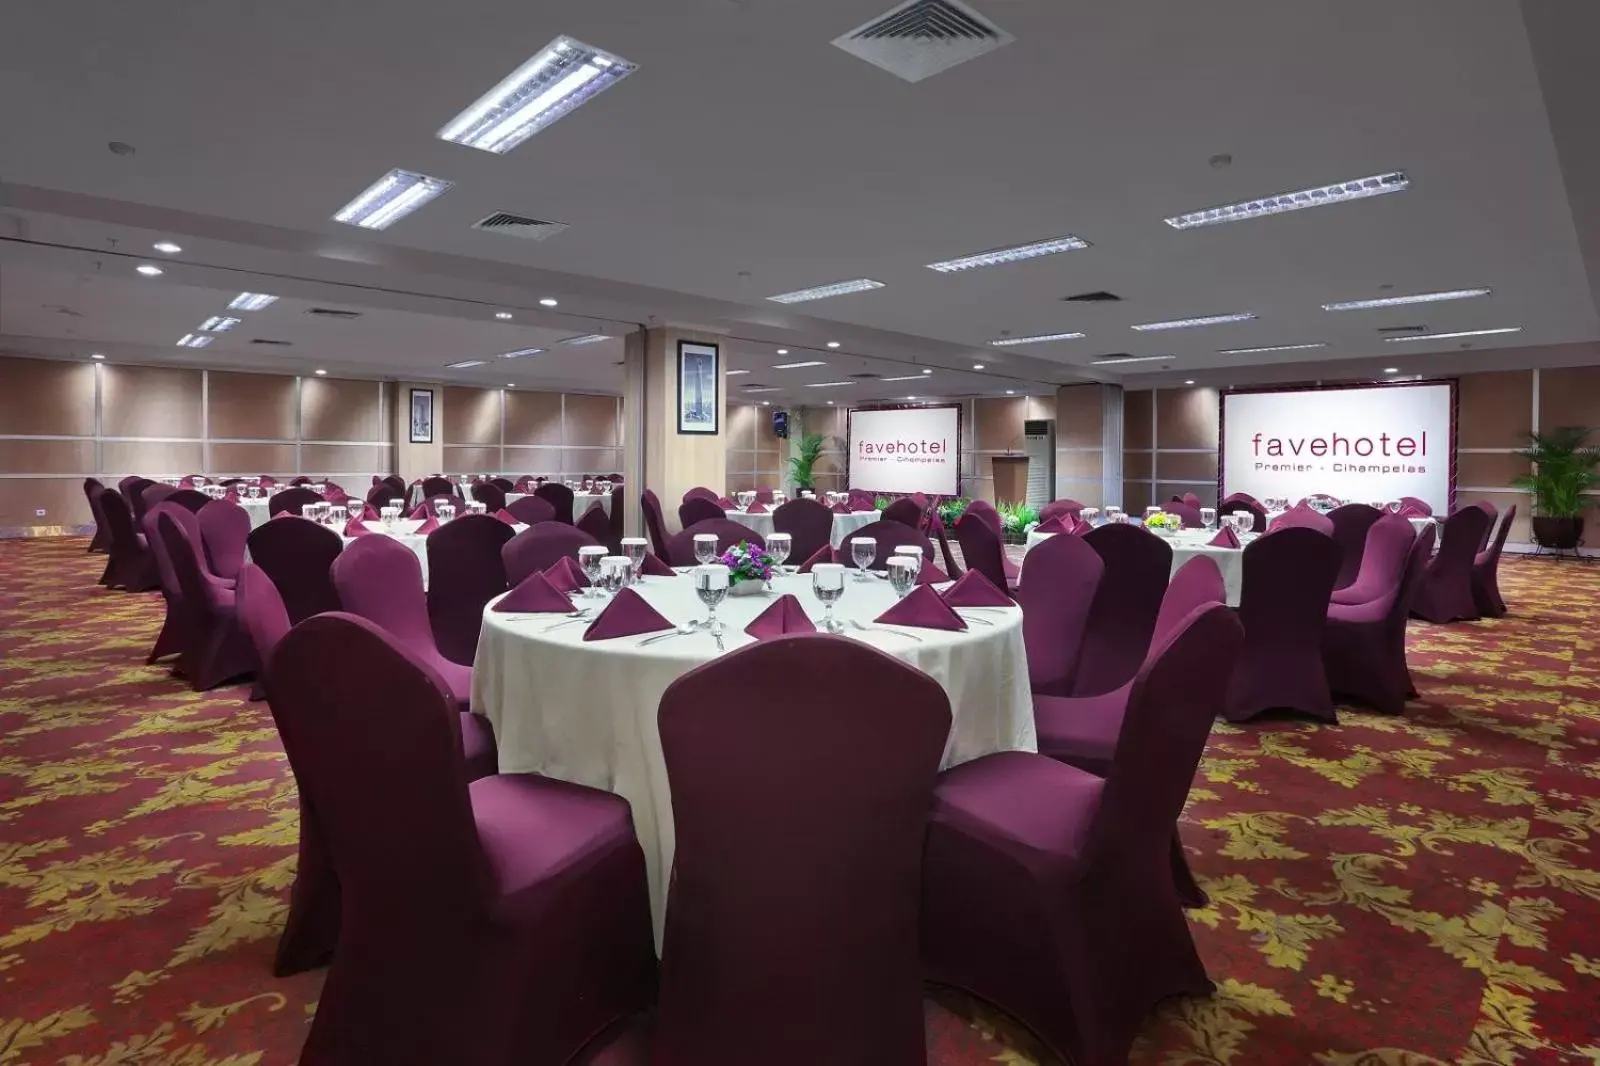 Banquet/Function facilities, Banquet Facilities in favehotel Premier Cihampelas